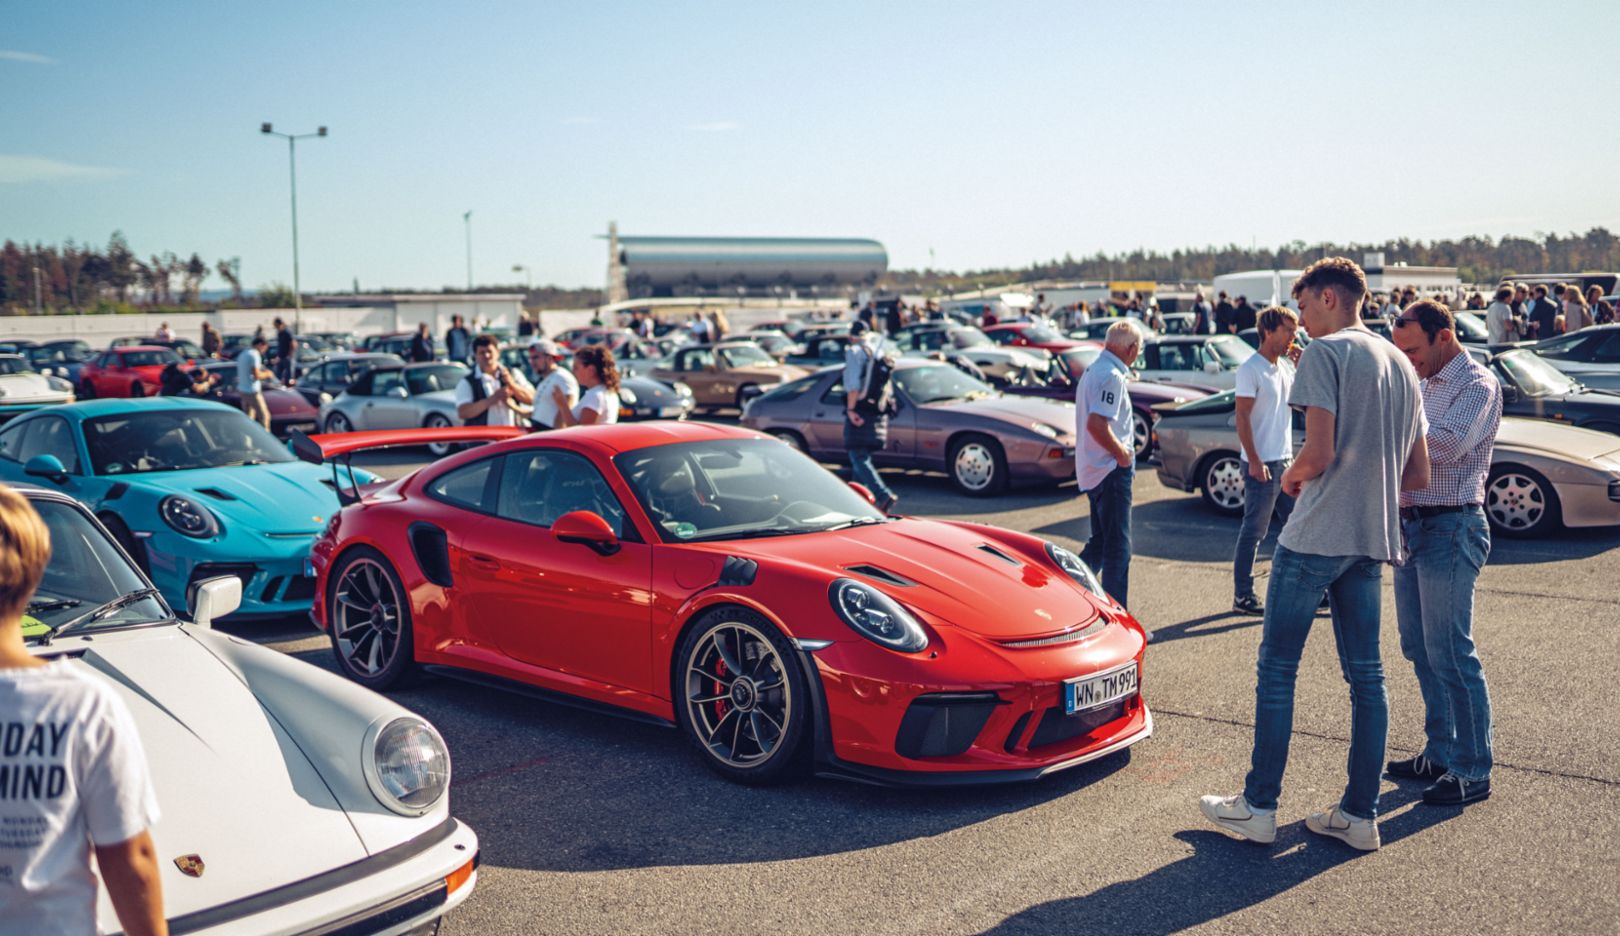 Zwei Tage lang wird gefeiert: Beim Festival of Dreams kommt die große Porsche Community auf dem Hockenheimring zusammen.